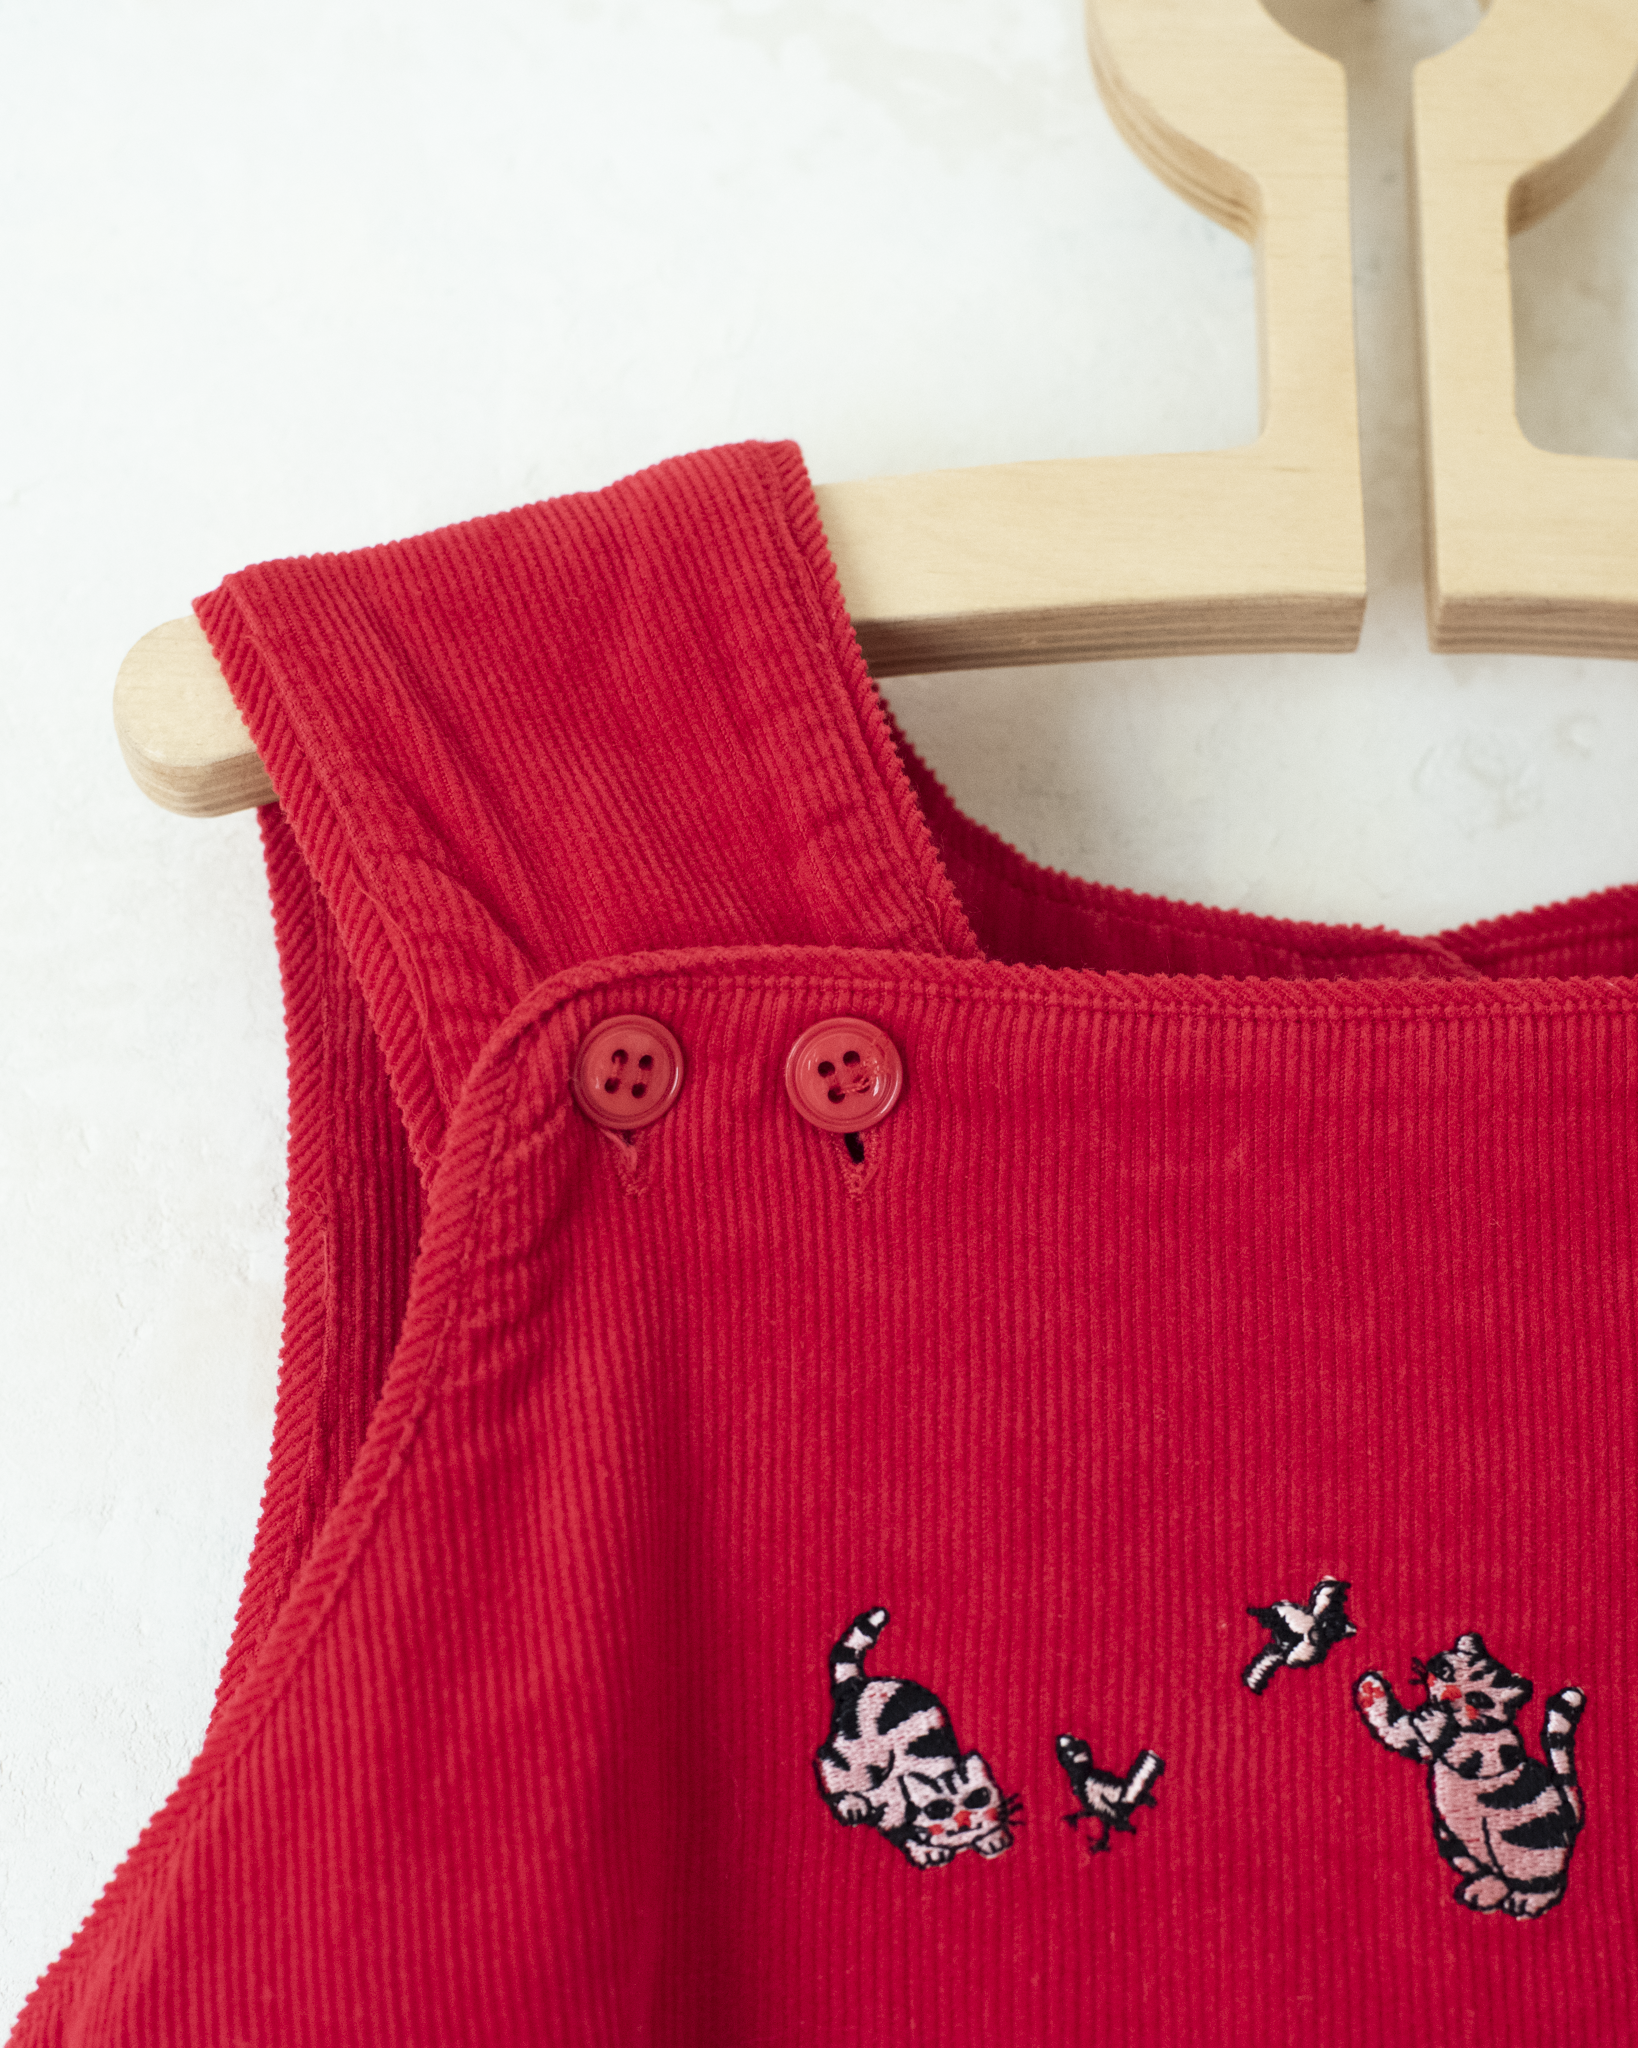 שמלת קורדרוי אדומה עם חתולים רקומים | 4-5 שנים